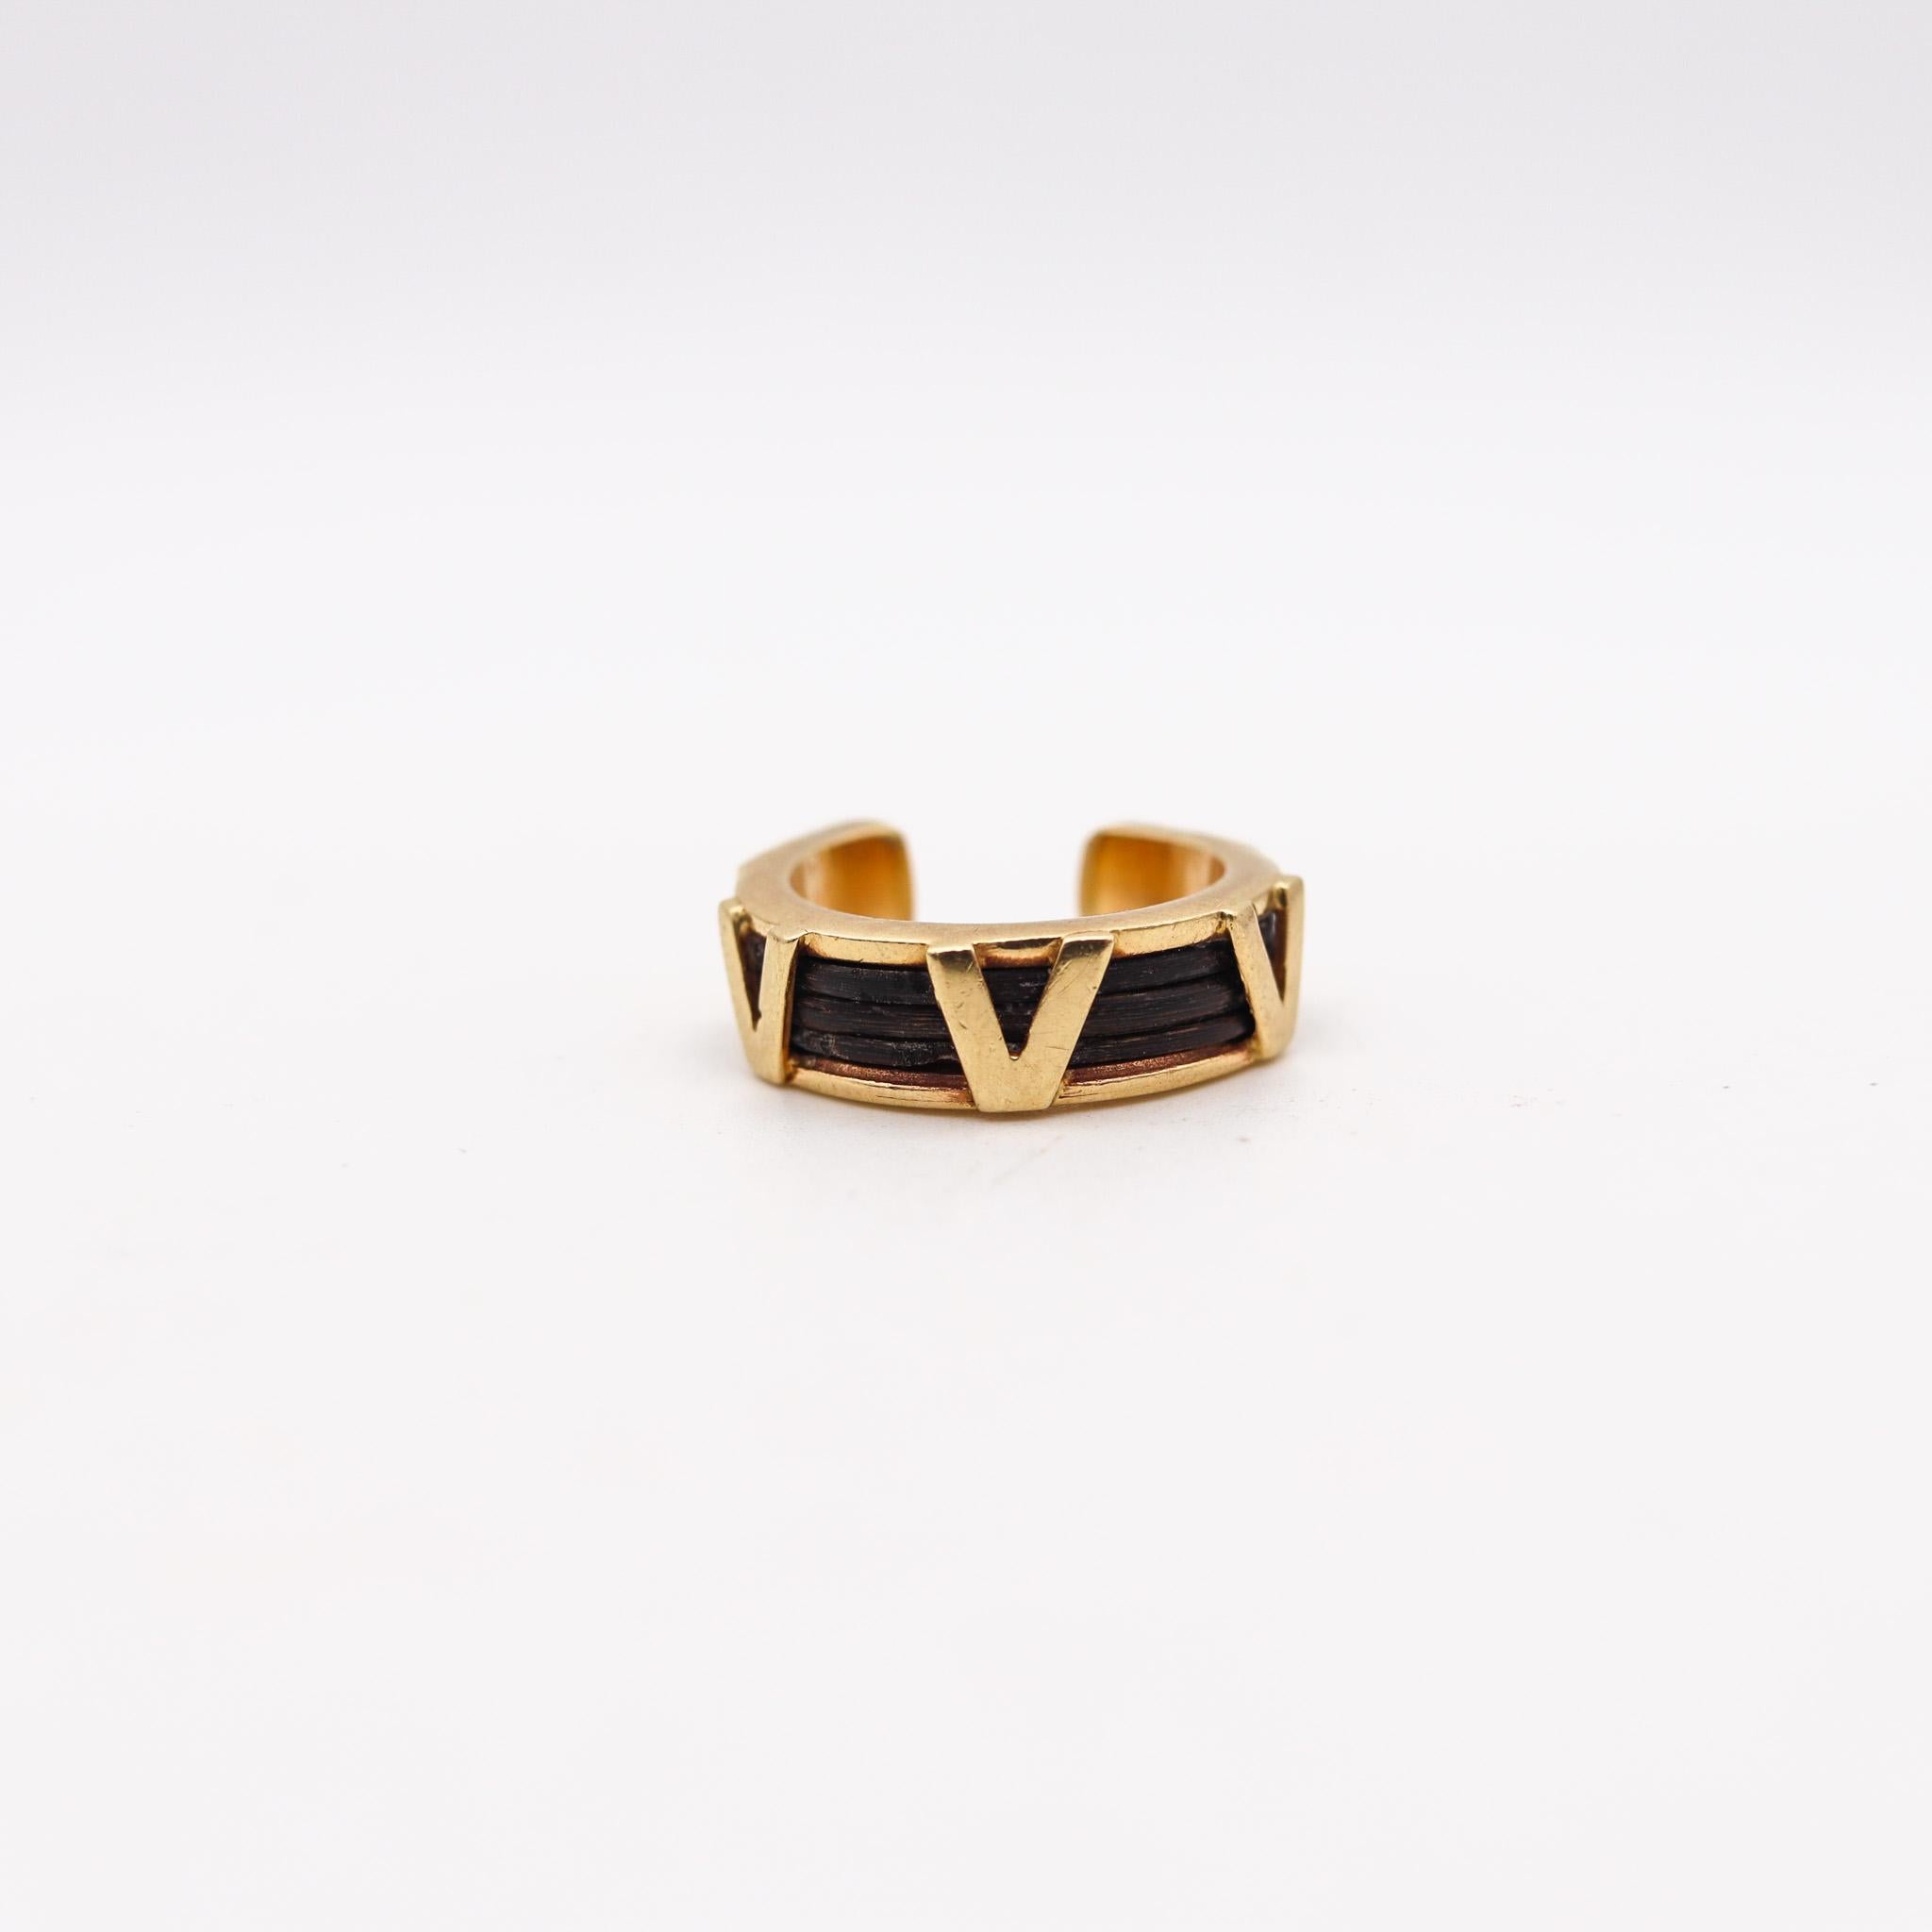 Ein Ring aus Elefantenhaar, entworfen von Valentino.

Fabelhafter Bandring, der in Mailand, Italien, vom Modehaus Valentino in den 1970er Jahren entworfen wurde. Dieser schöne Ring wurde mit drei V-Buchstaben für Valentino entworfen und in massivem